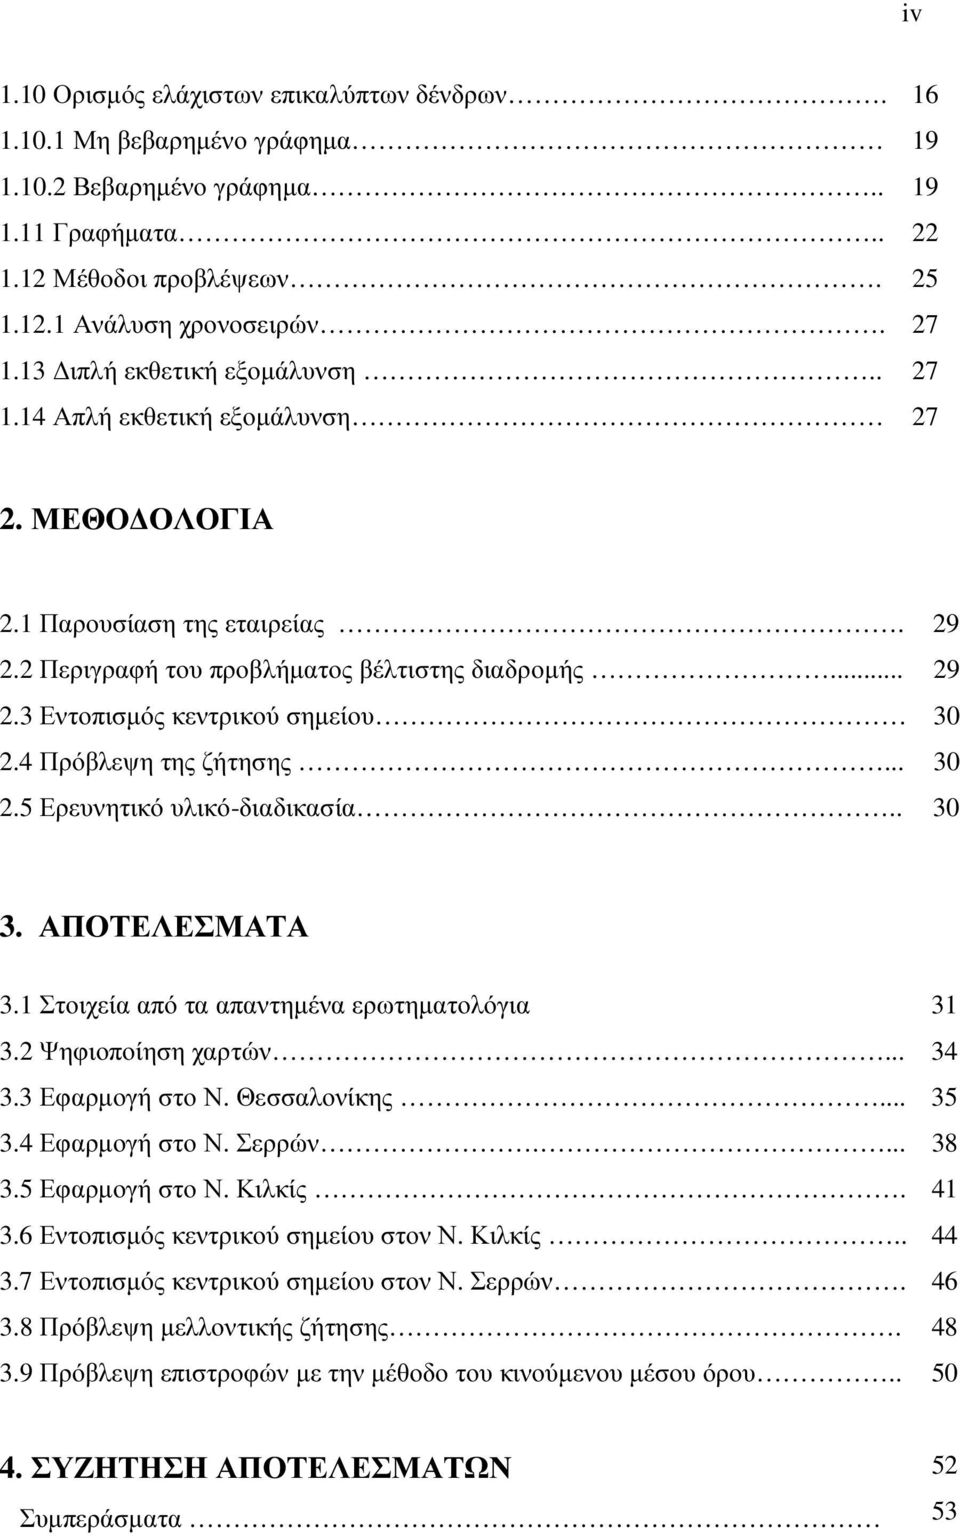 4 Πρόβλεψη της ζήτησης... 30 2.5 Ερευνητικό υλικό-διαδικασία.. 30 3. ΑΠΟΤΕΛΕΣΜΑΤΑ 3.1 Στοιχεία από τα απαντηµένα ερωτηµατολόγια 31 3.2 Ψηφιοποίηση χαρτών... 34 3.3 Εφαρµογή στο Ν. Θεσσαλονίκης... 35 3.